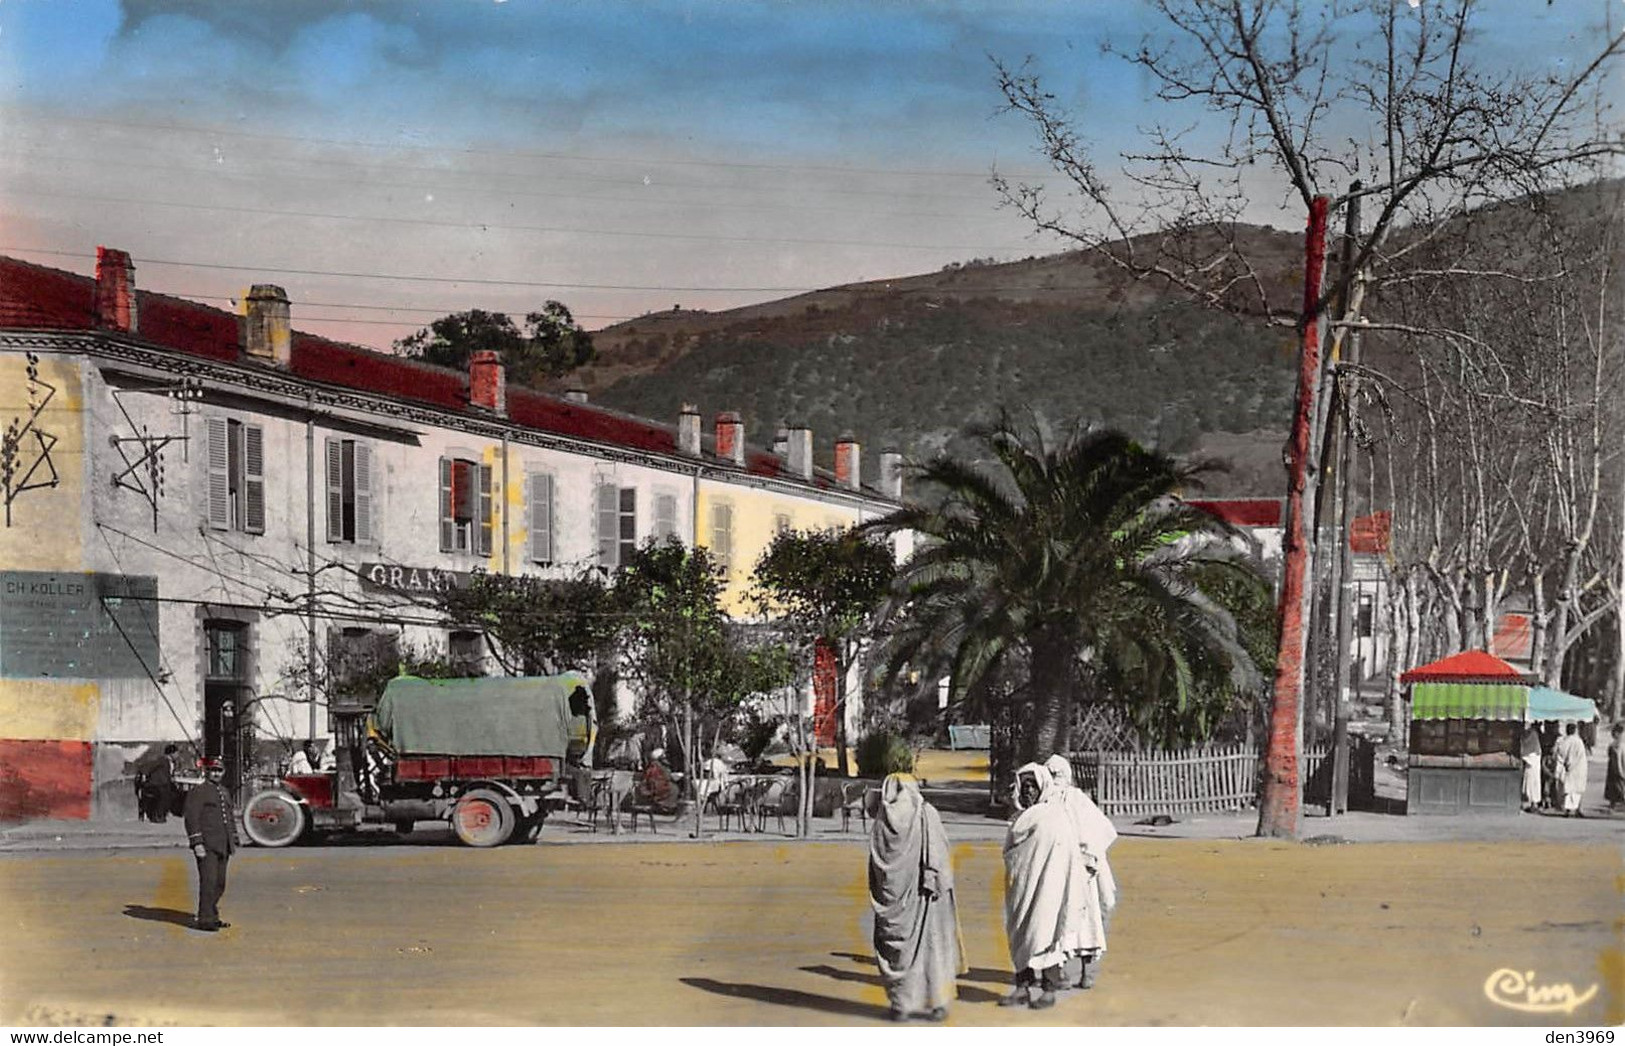 Algérie - TIZI-OUZOU - Grand Hôtel Koller - Camion - Kiosque à Journaux - Collection A. Cheikh - Tizi Ouzou